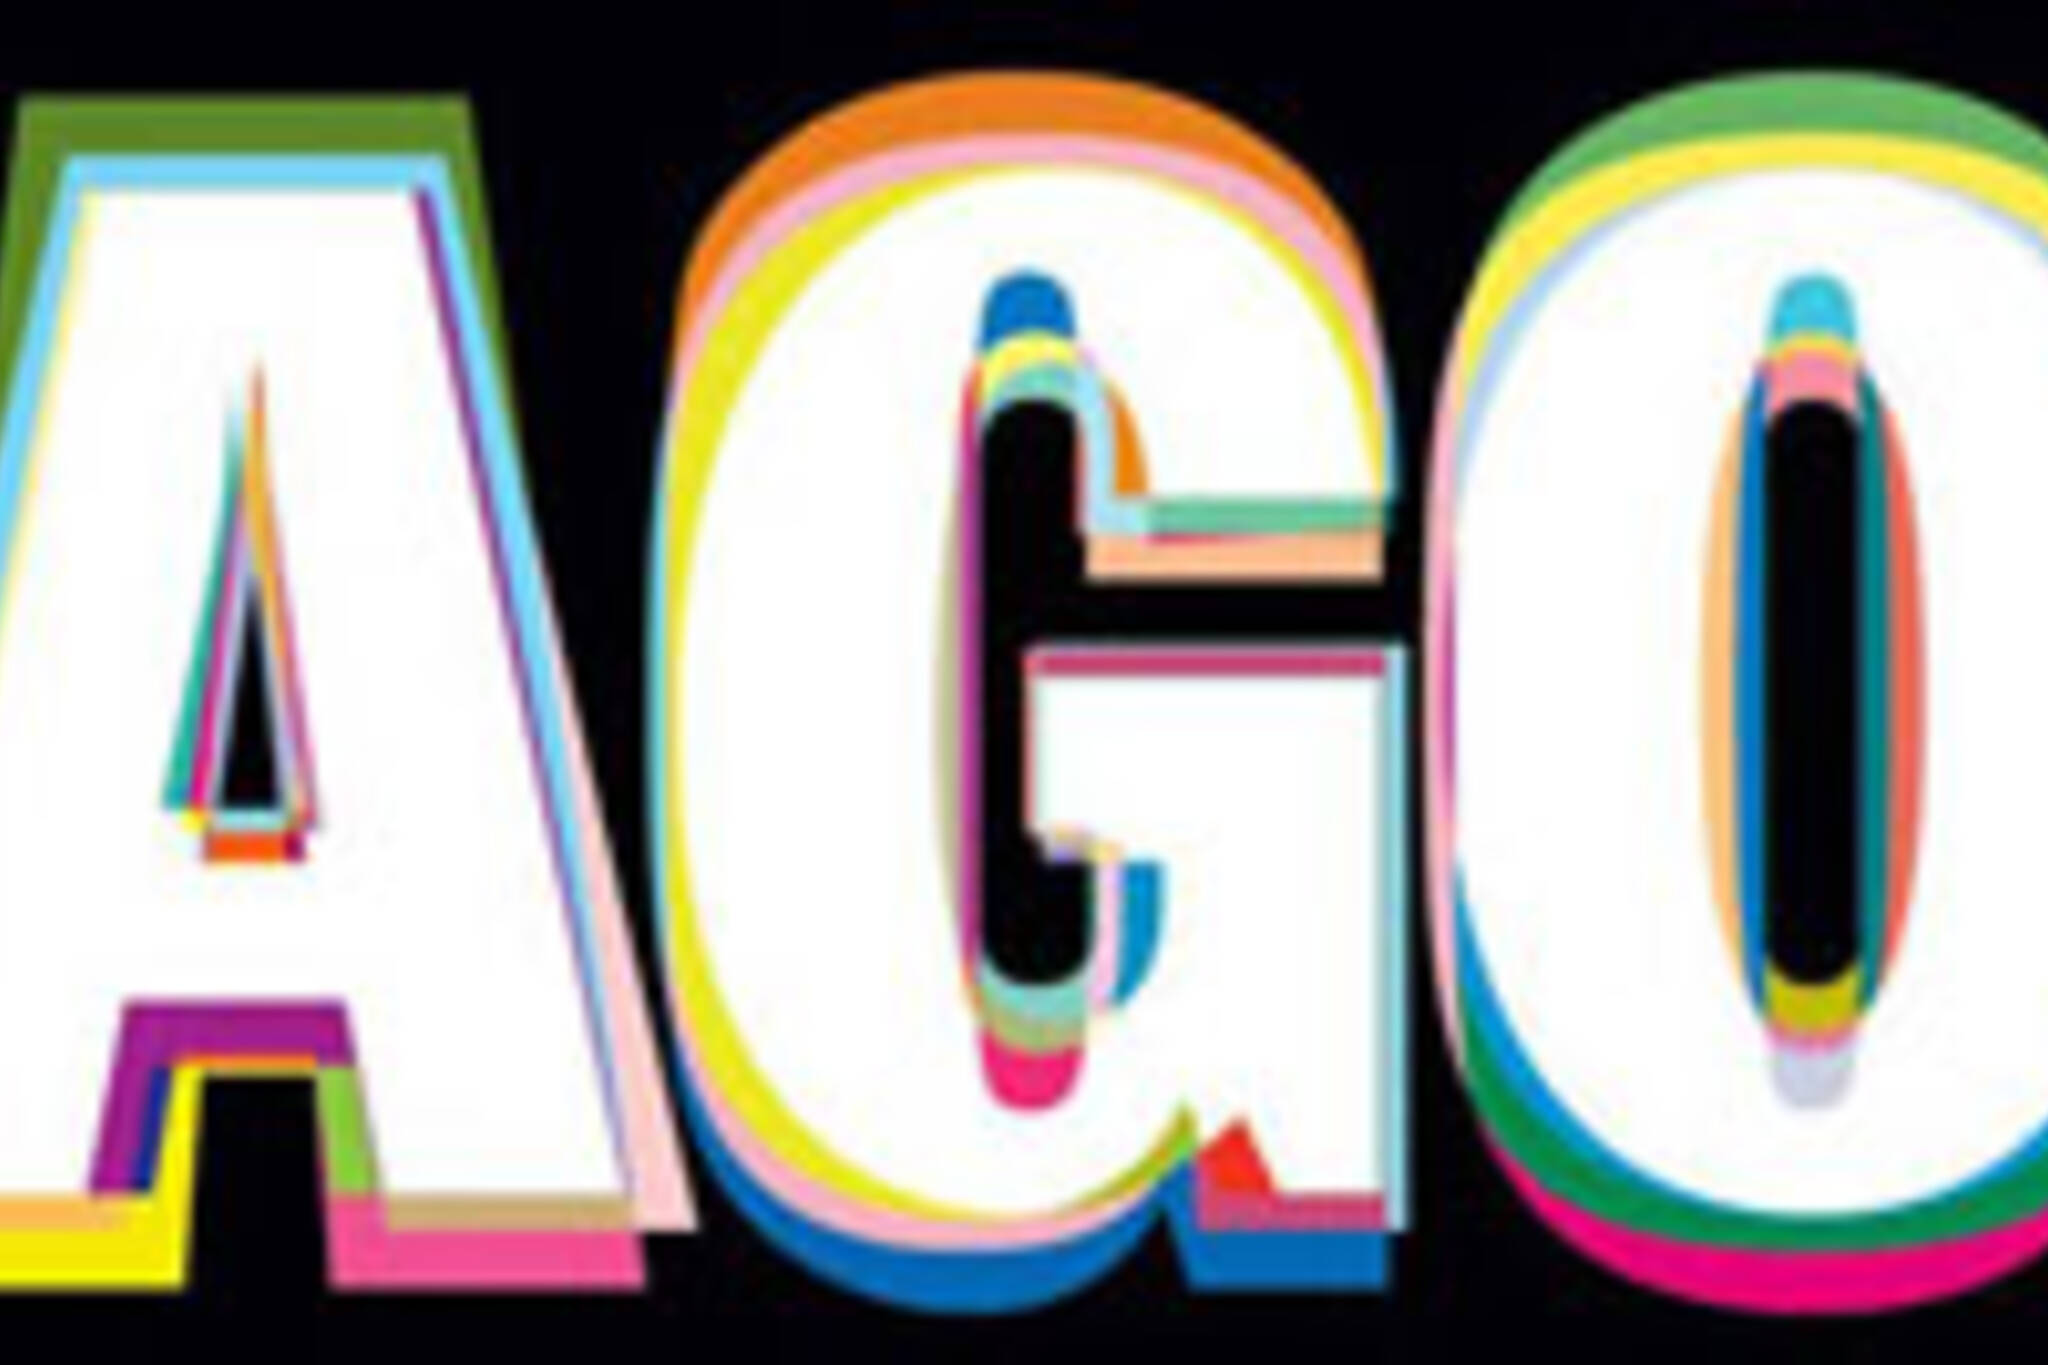 AGO Logo